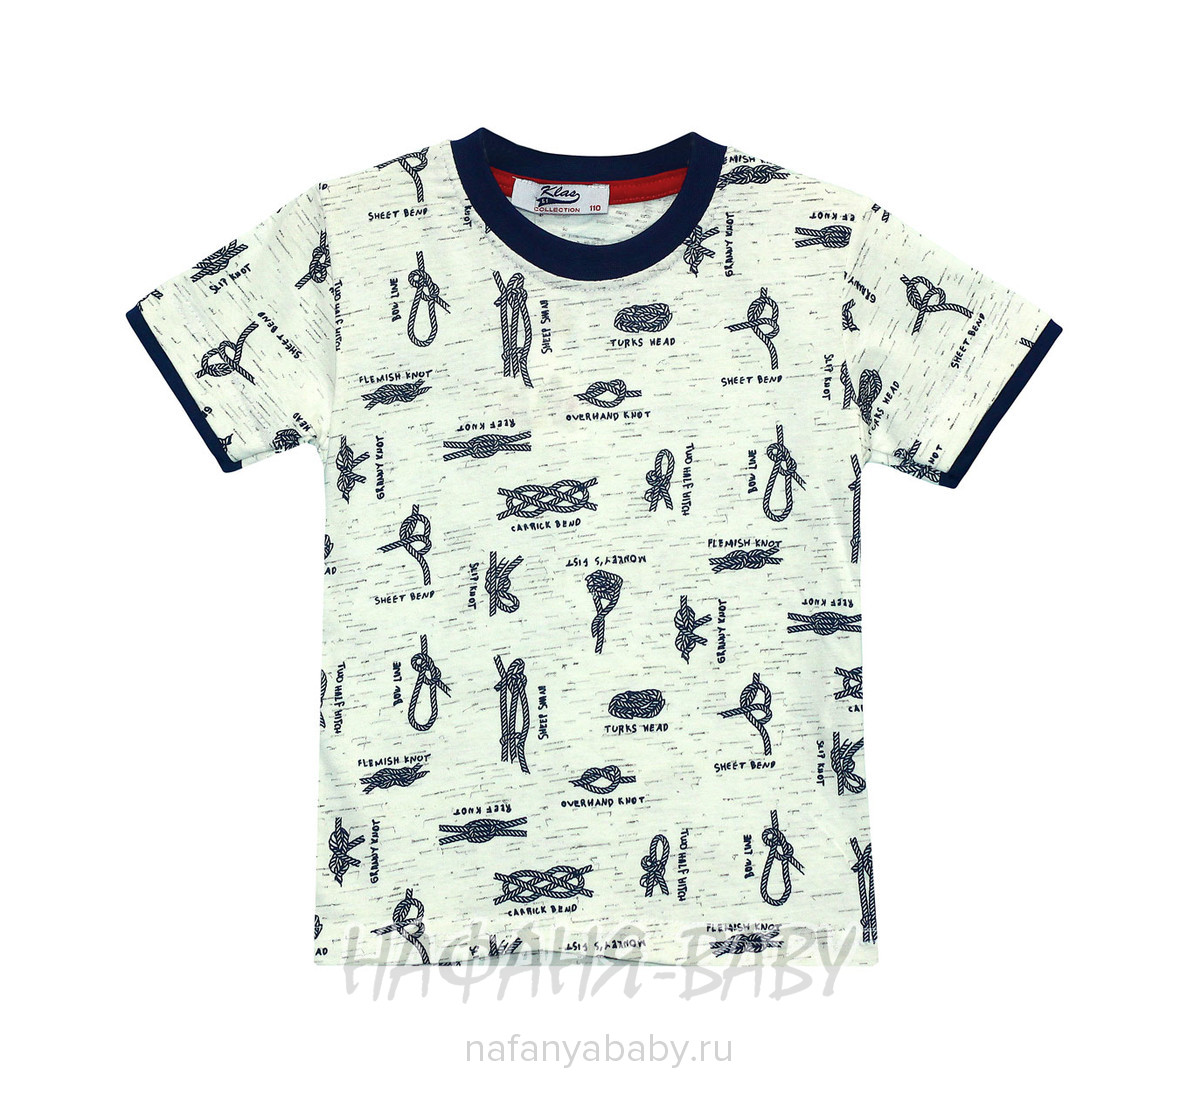 Подростковая футболка KLAS, купить в интернет магазине Нафаня. арт: 4636.